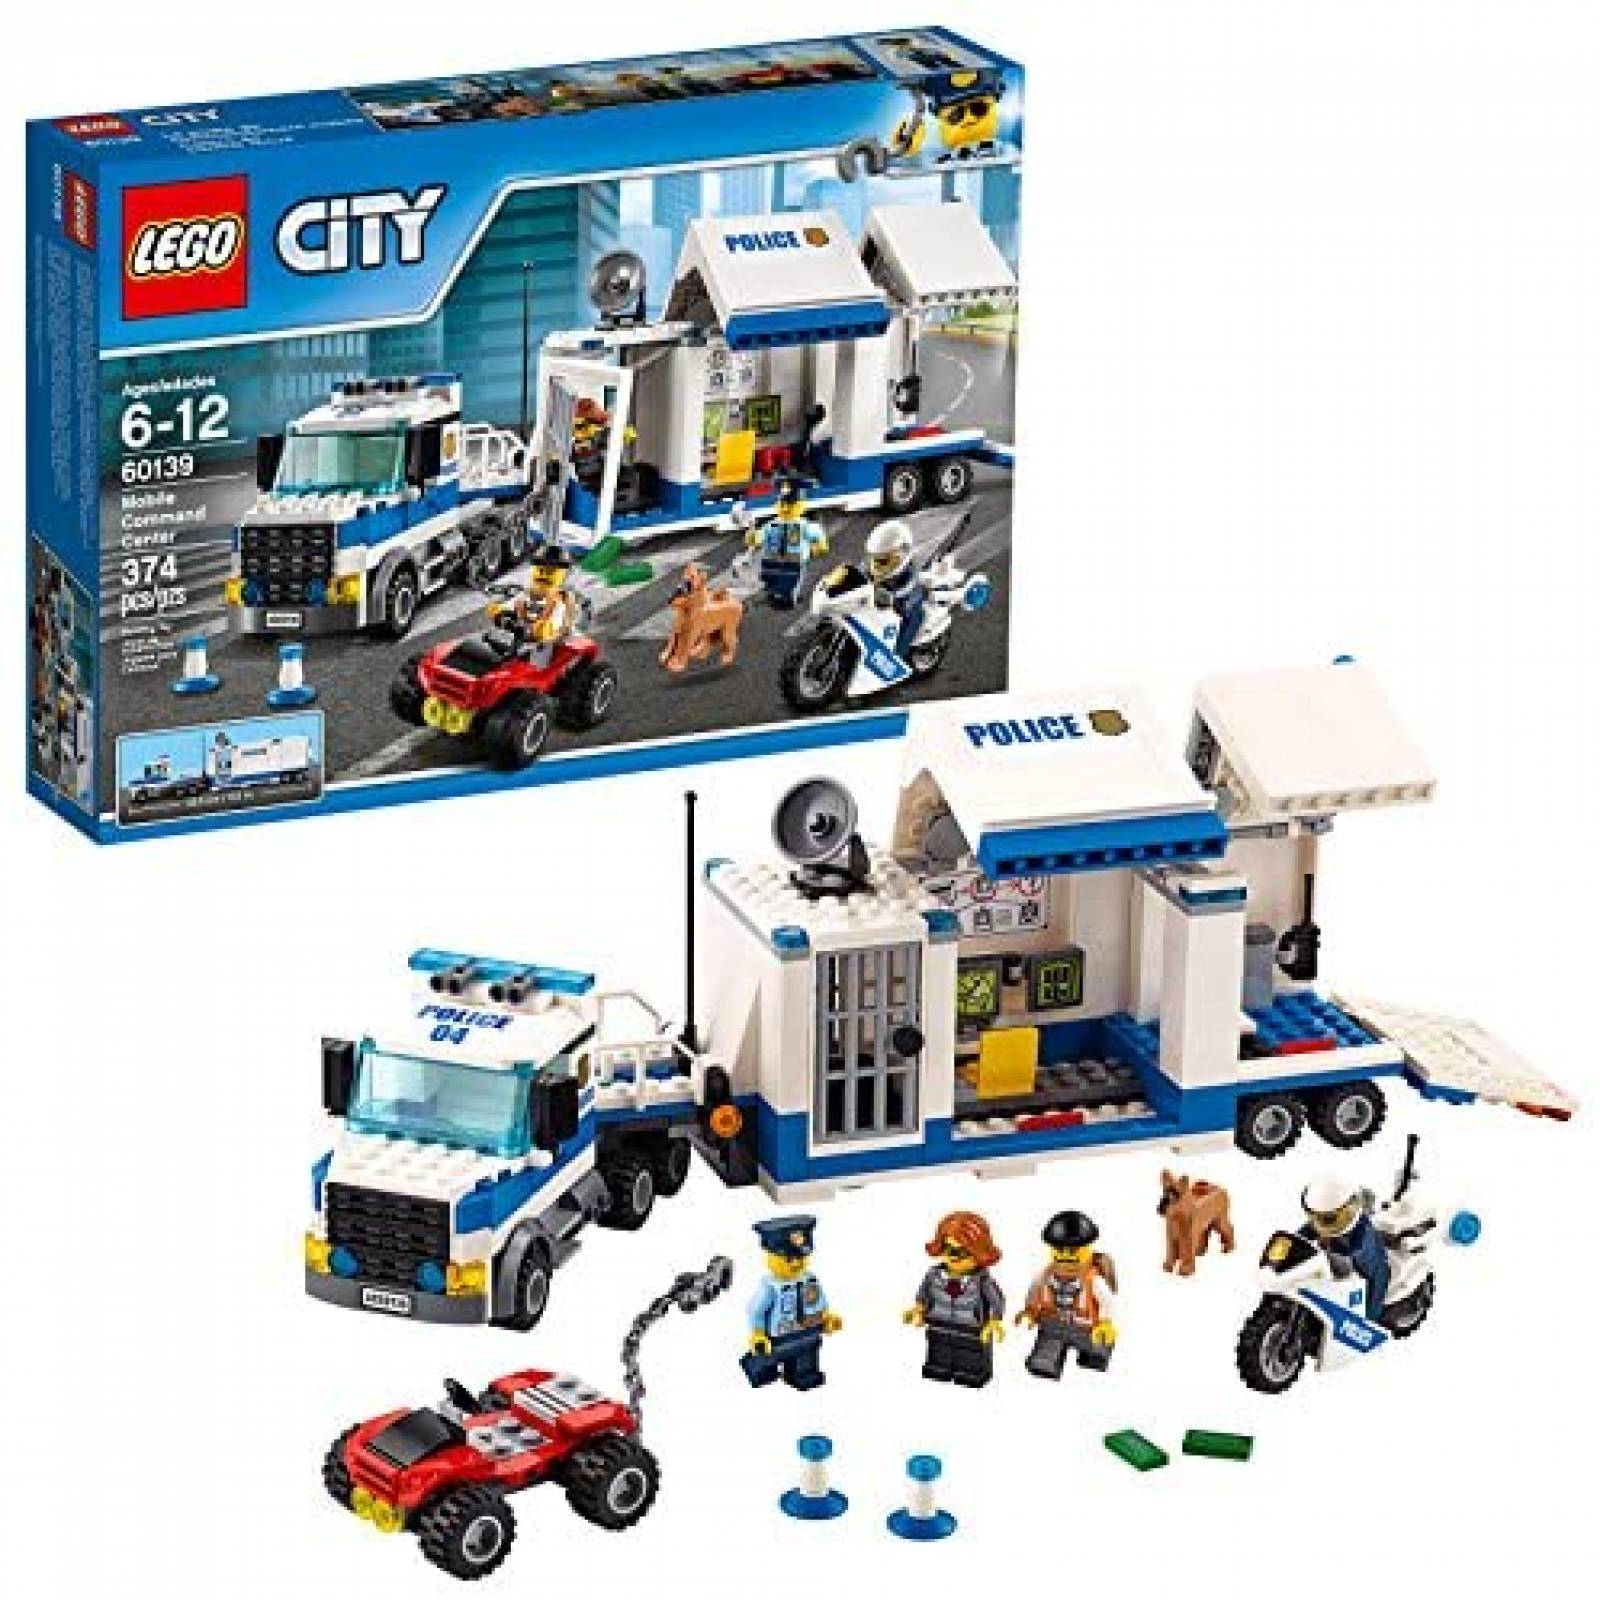 Set de Construcción LEGO Police Command Center 374 Pzs